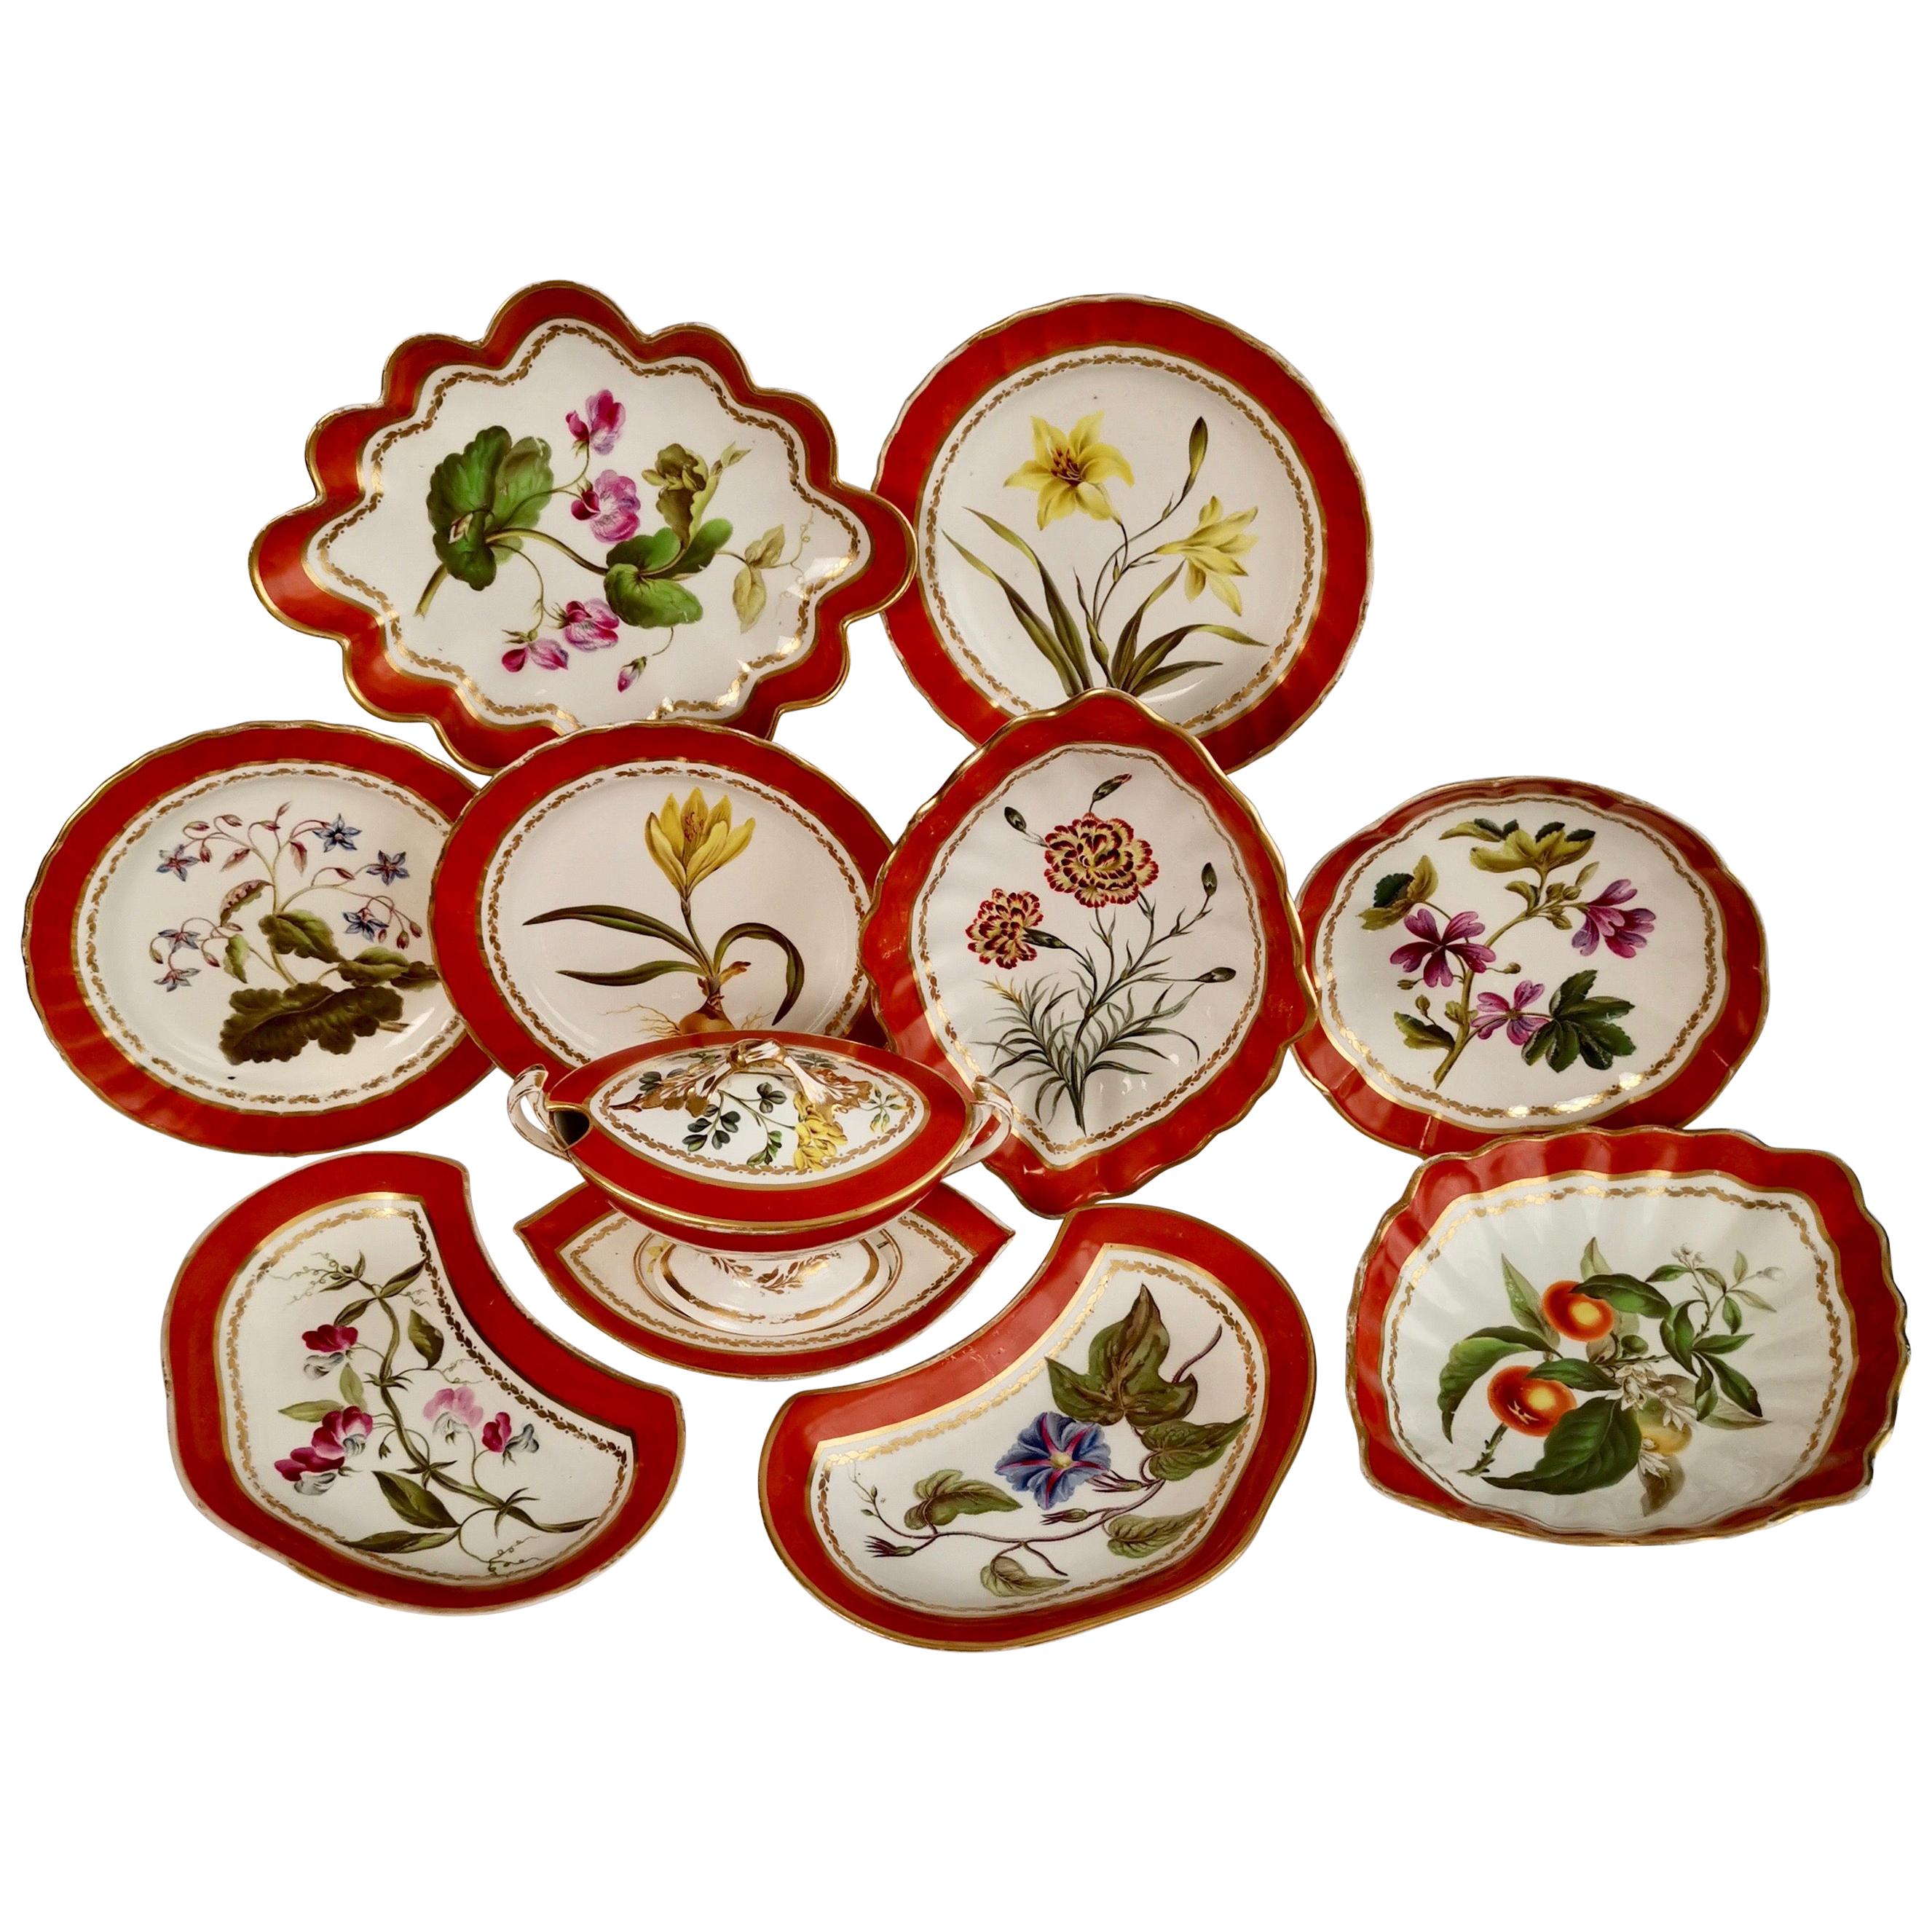 Derby Porcelain Dessert Service Red Botanical Attr. to John Brewer, Regency 1795